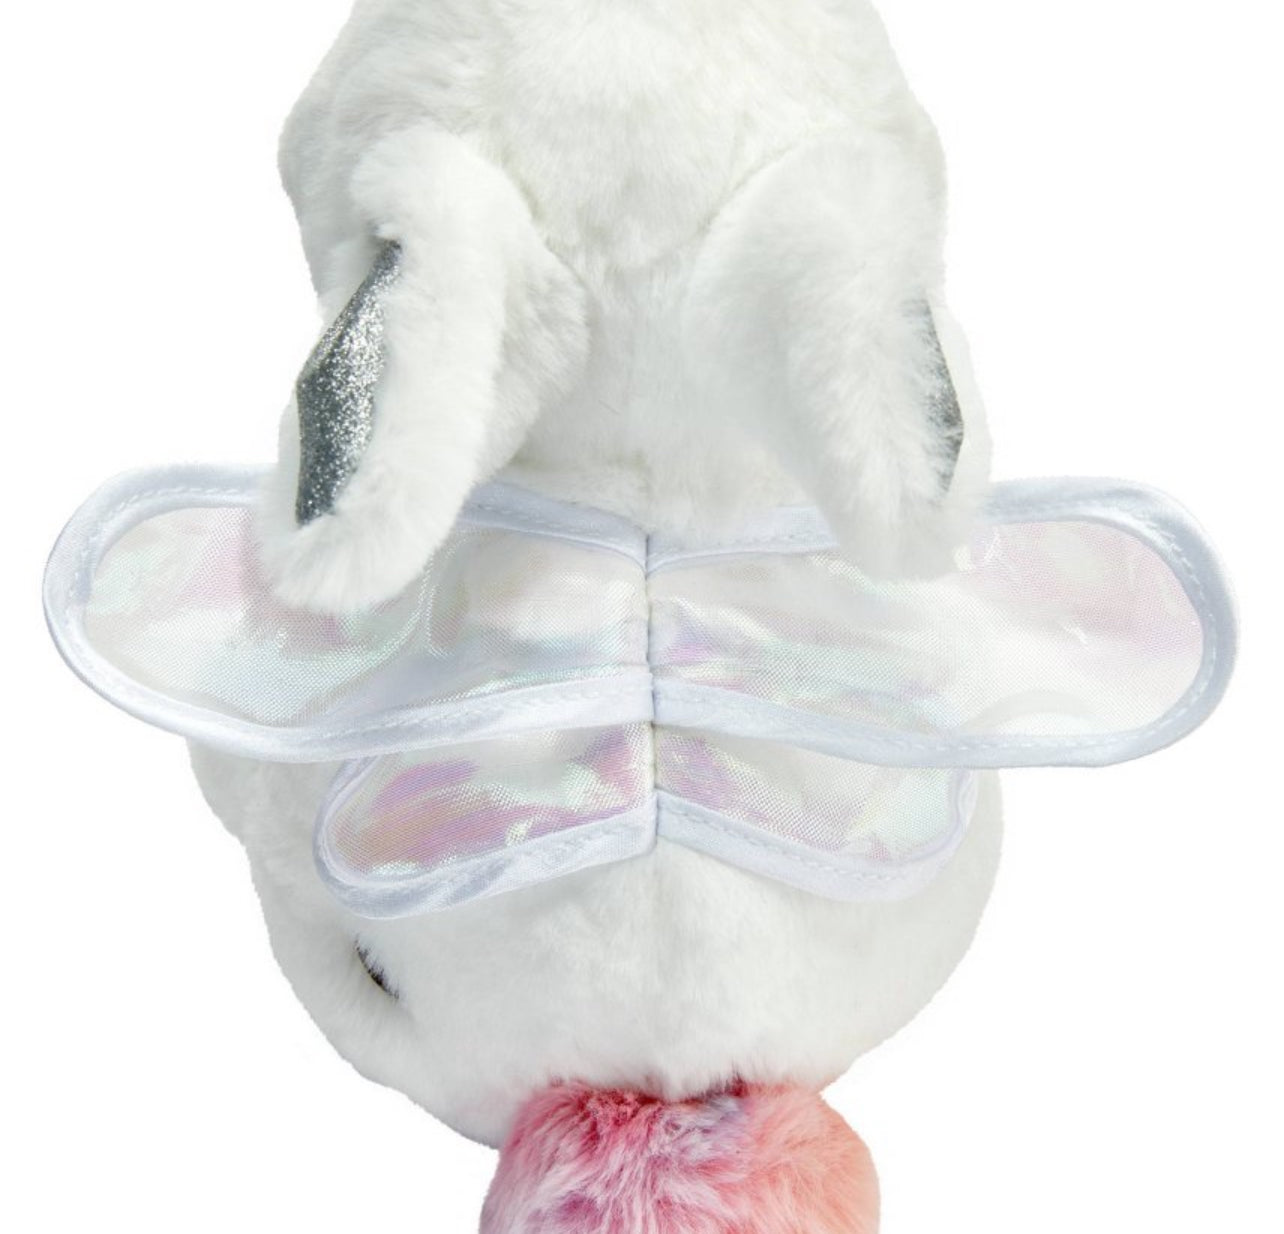 FAO Schwarz Toy Plush Bunny Fairy 9" White w/ TieDyed Tail